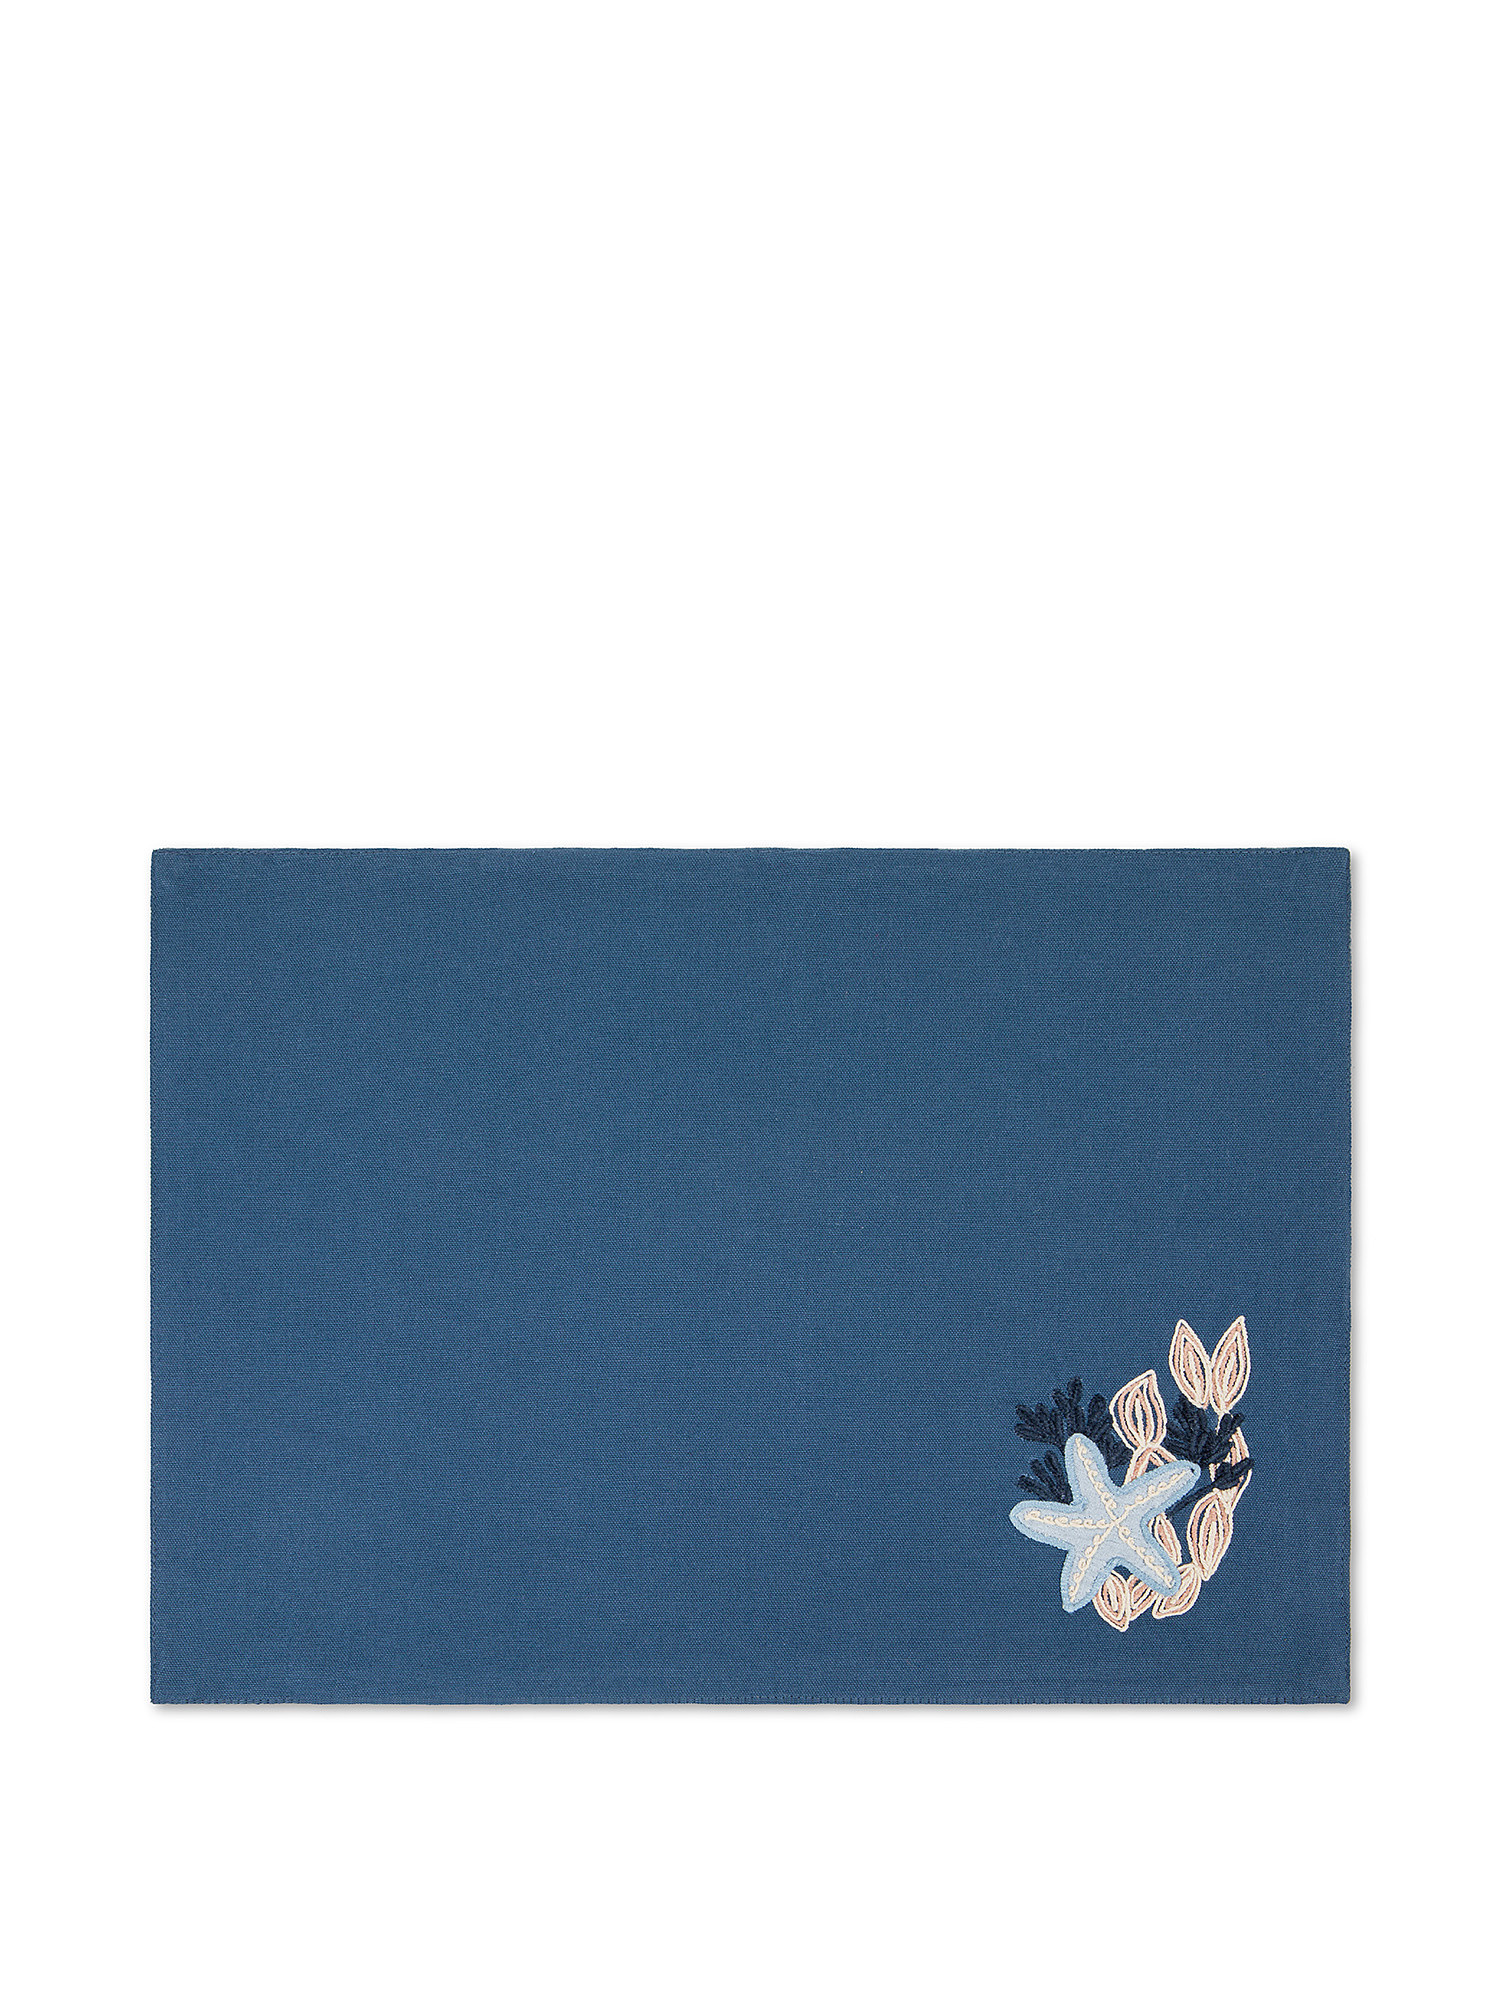 Tovaglietta in puro cotone con ricamo., Blu, large image number 0